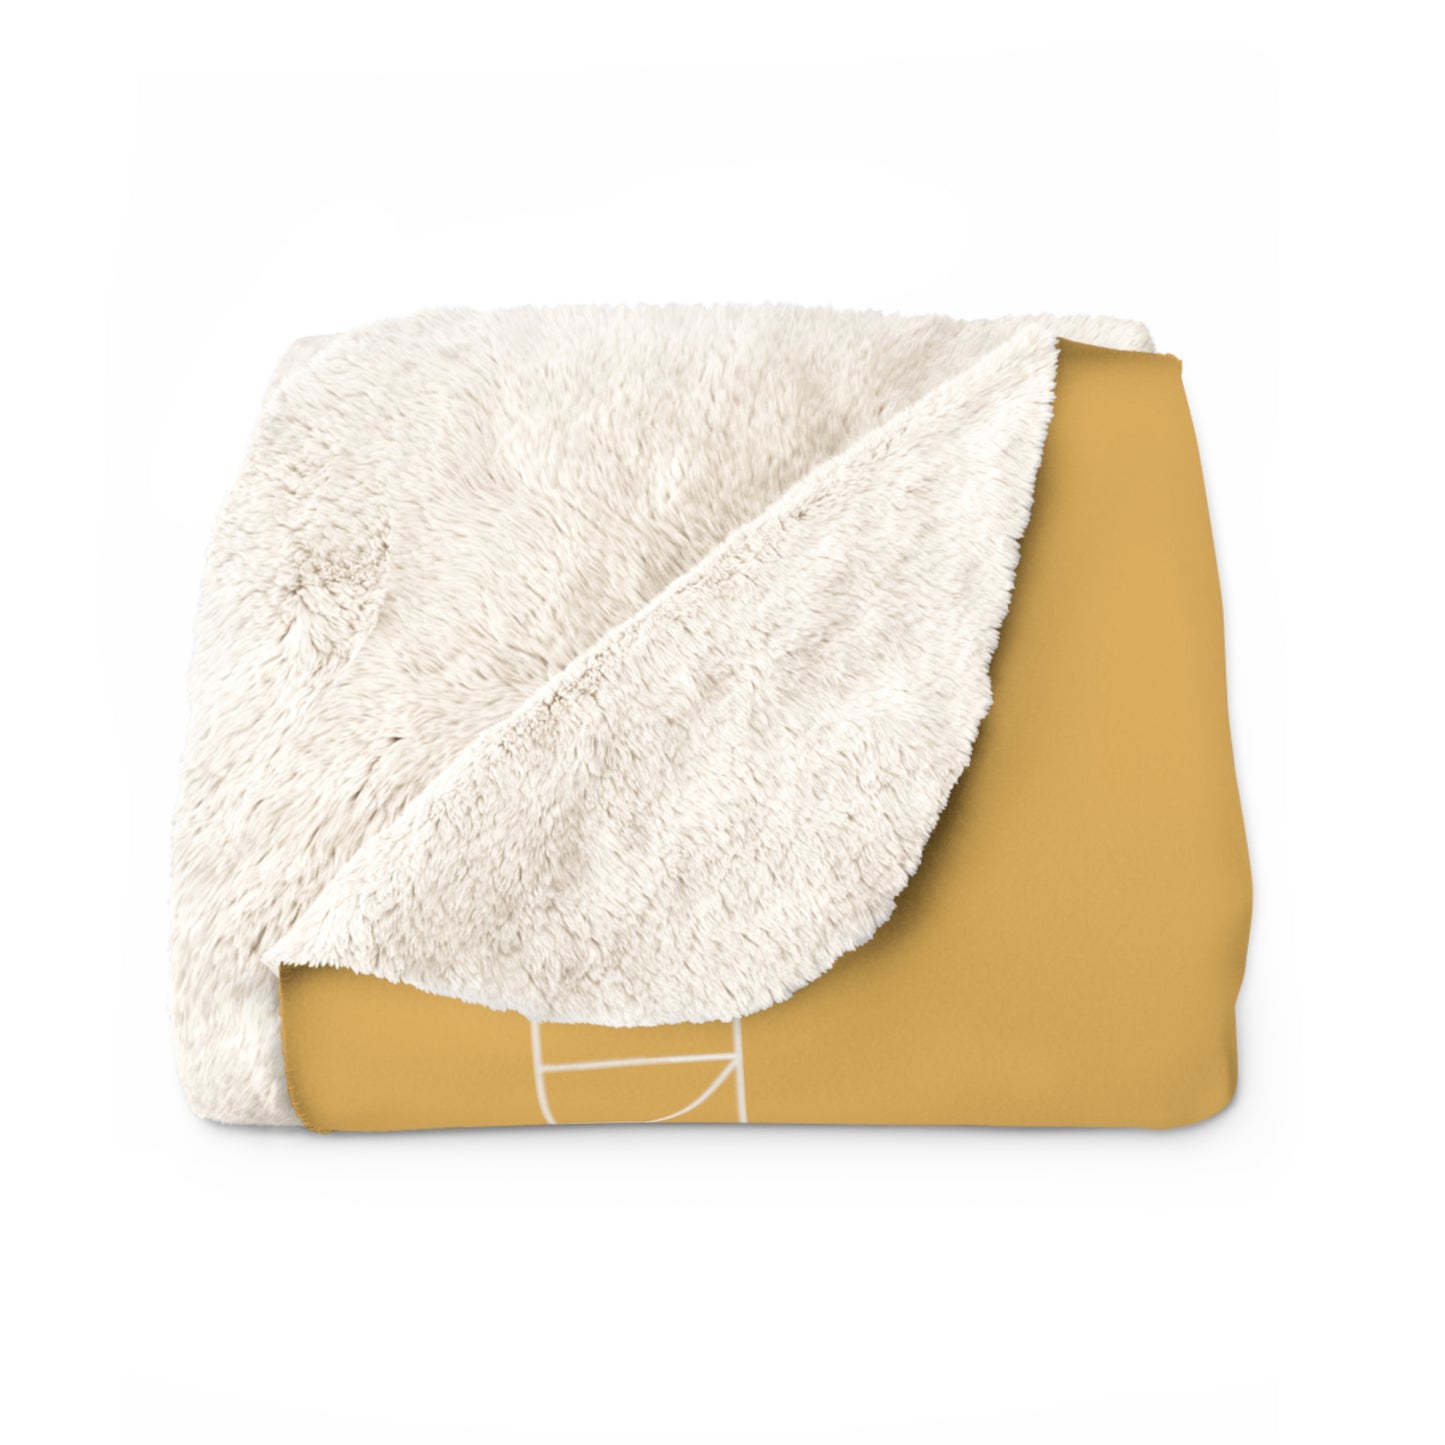 Sherpa Fleece Blanket - Hunyadi Yellow